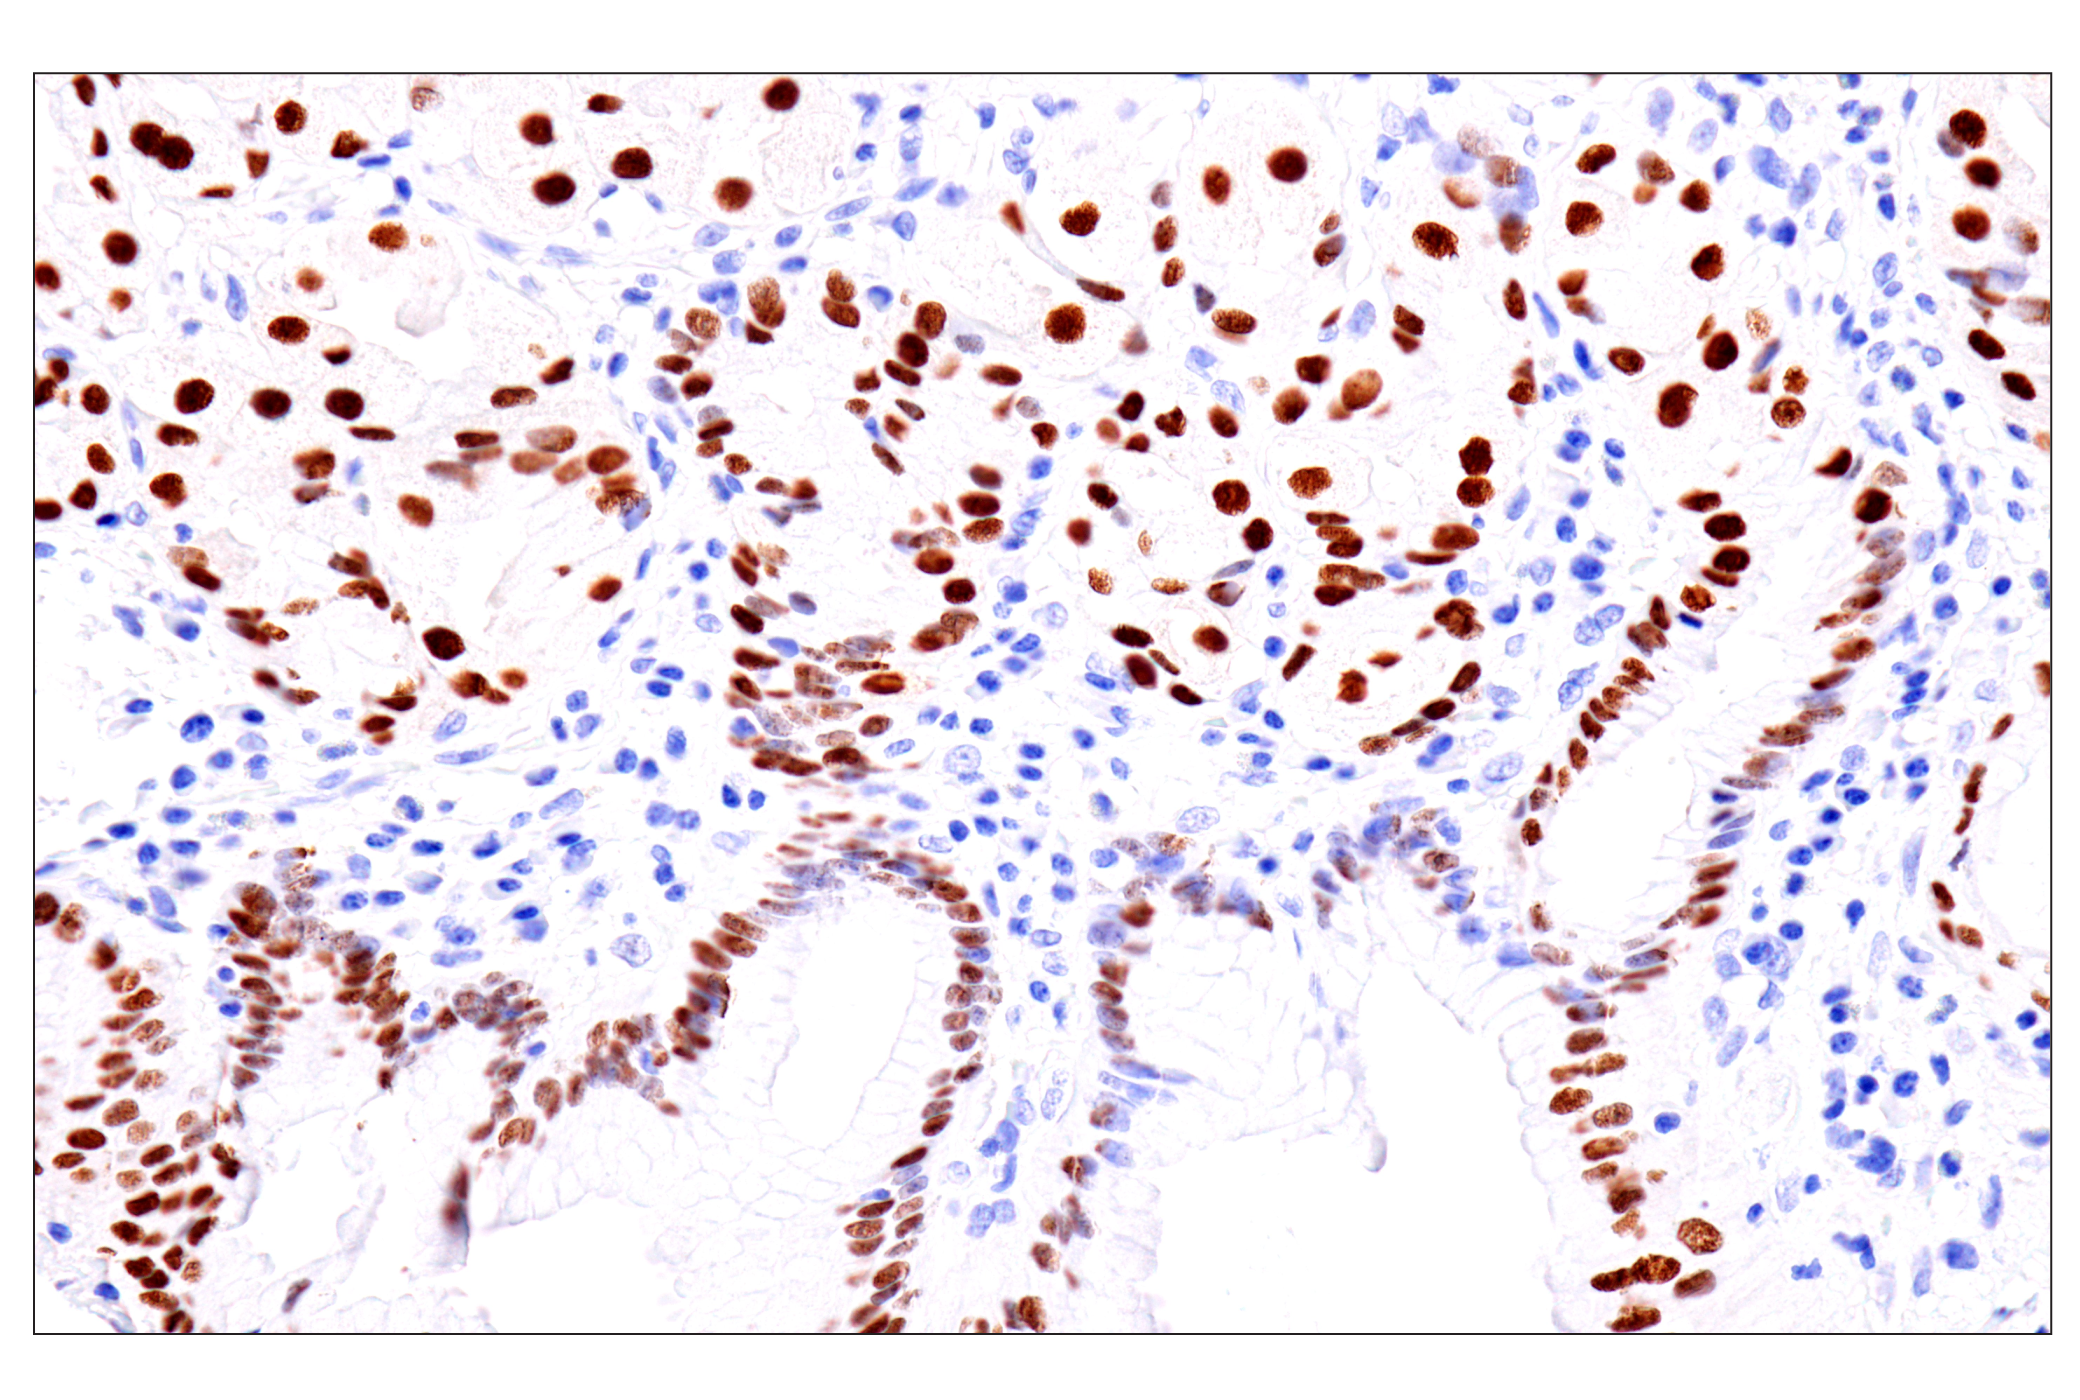  Image 47: GATA Transcription Factor Antibody Sampler Kit